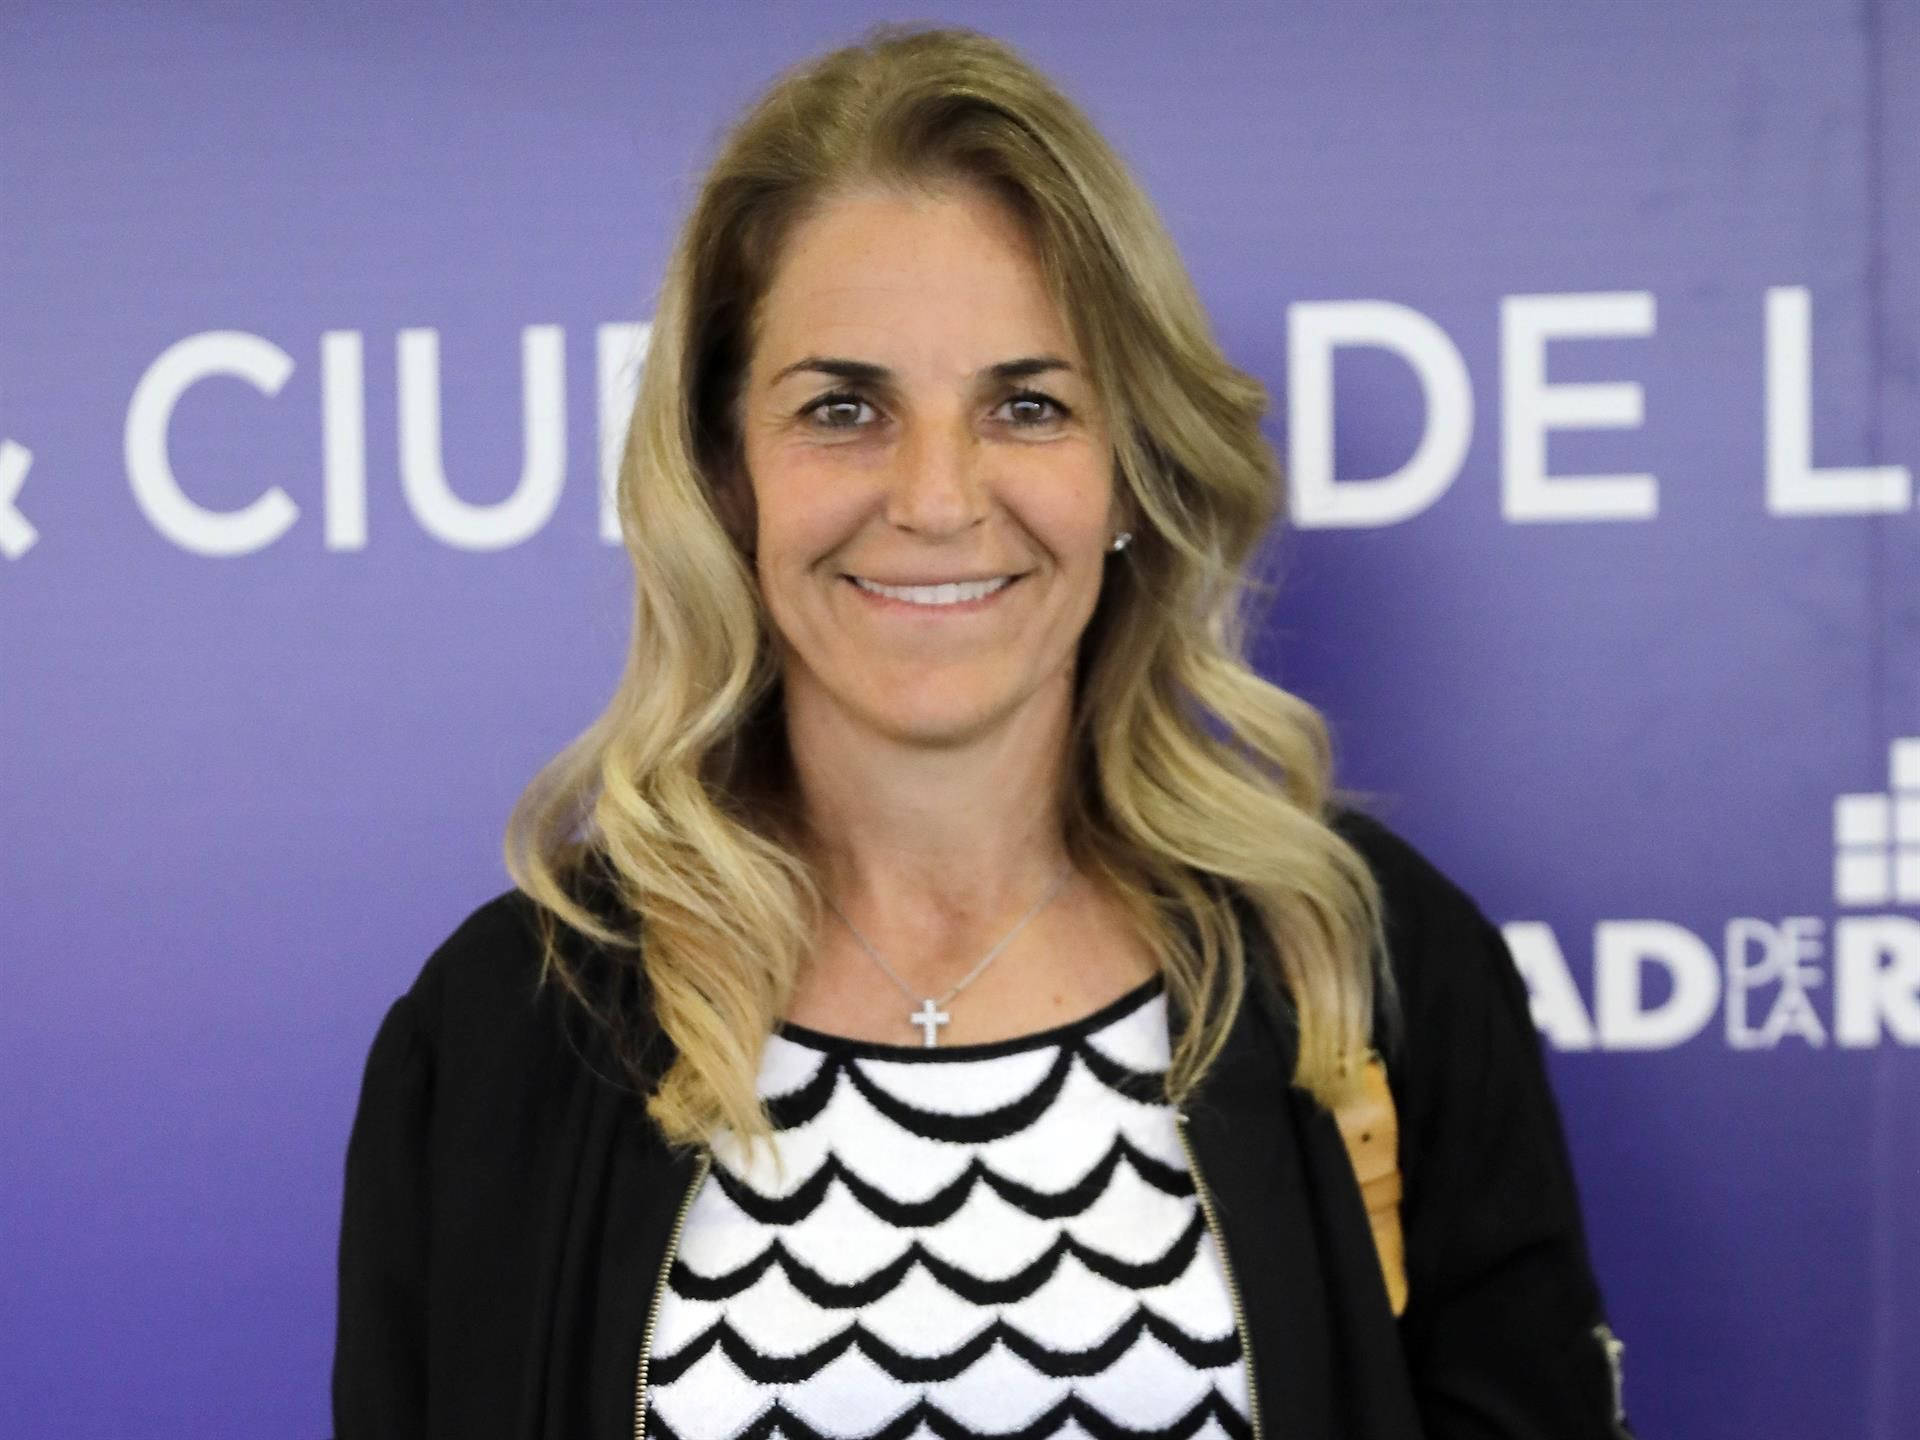 Arantxa Sánchez Vicario spansk tennis spiller tapet Wallpaper